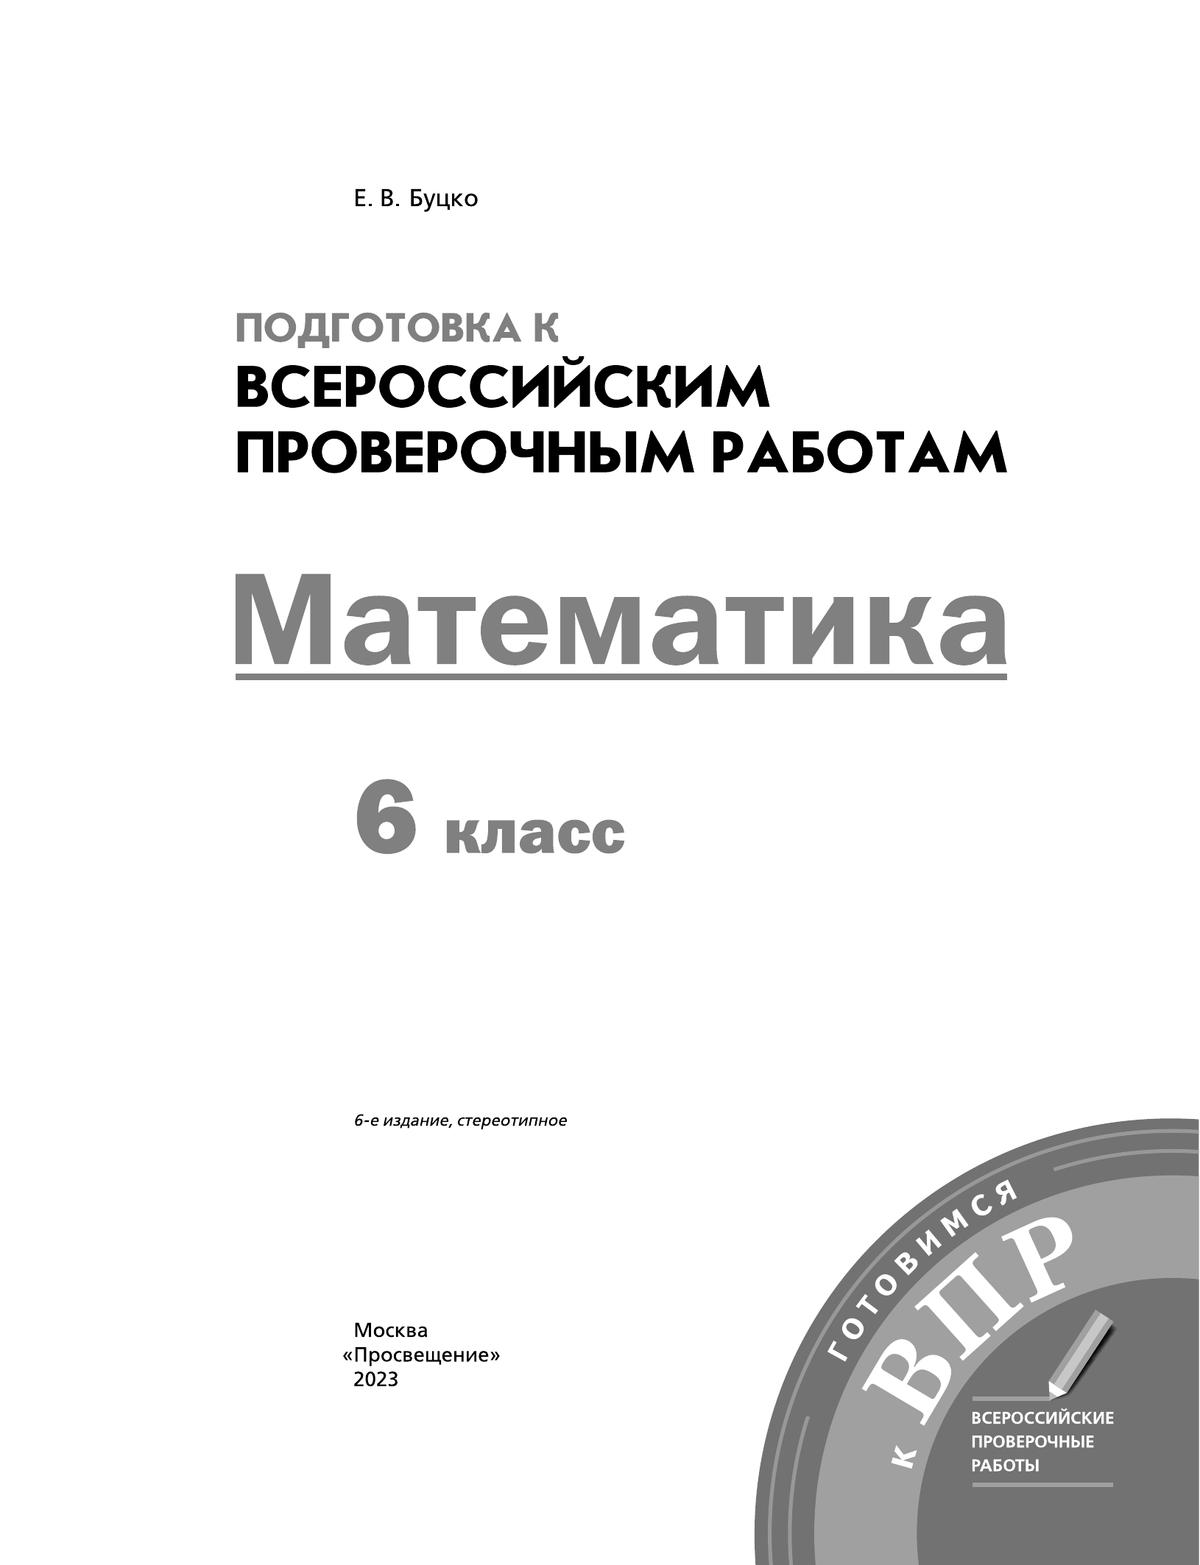 Математика. 6 класс. Подготовка к всероссийским проверочным работам (ВПР) 8